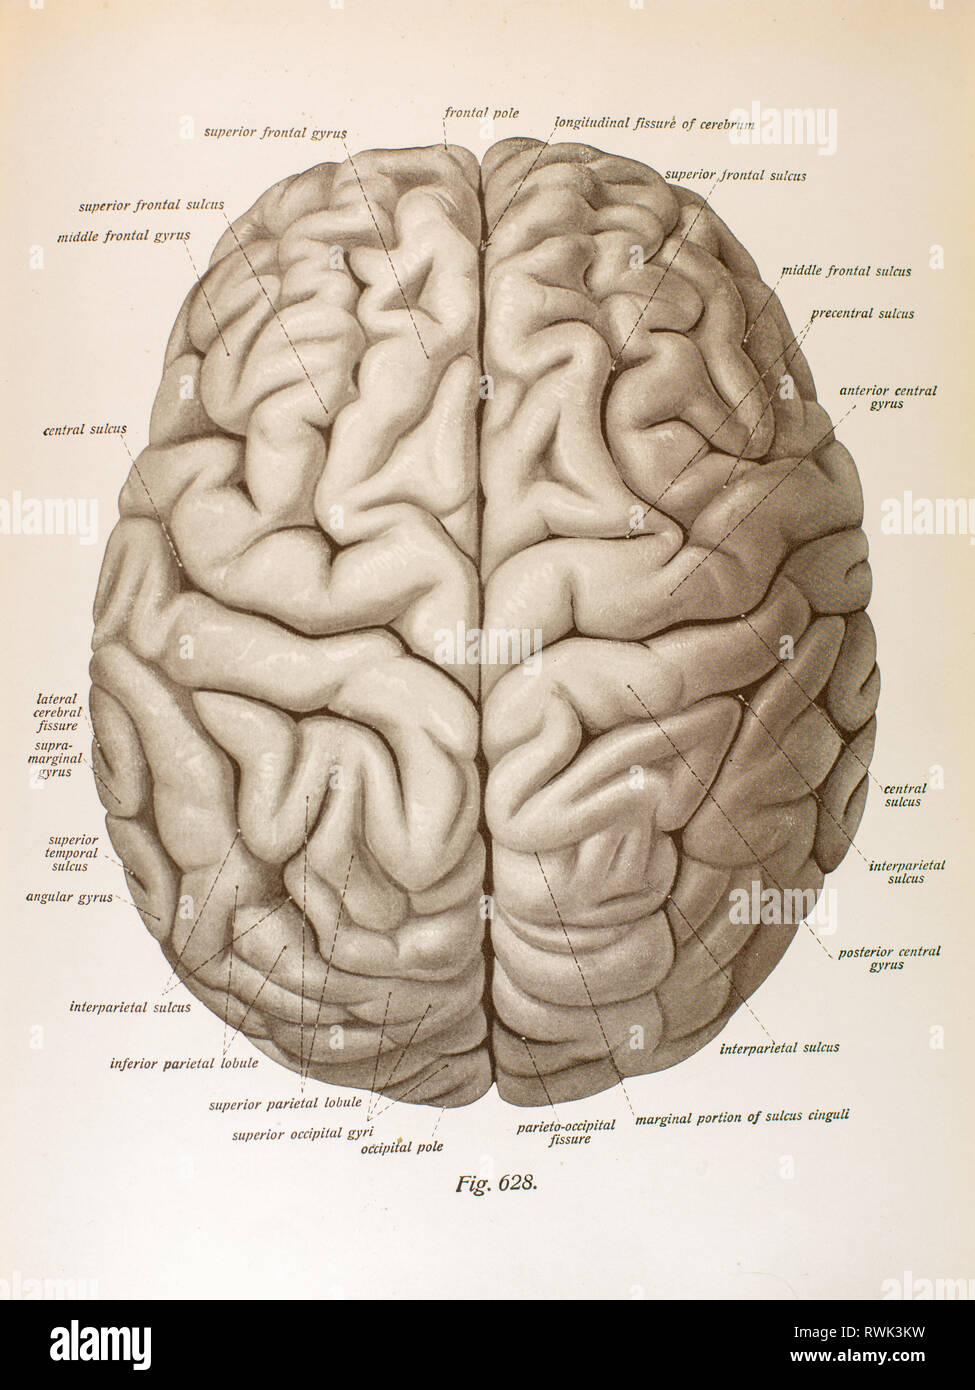 Борозды и извилины мозга человека. Головной мозг вид сбоку. Доли головного мозга вид сбоку. Головной мозг анатомия человека борозды и извилины. Головной мозг вид сбоку борозды.